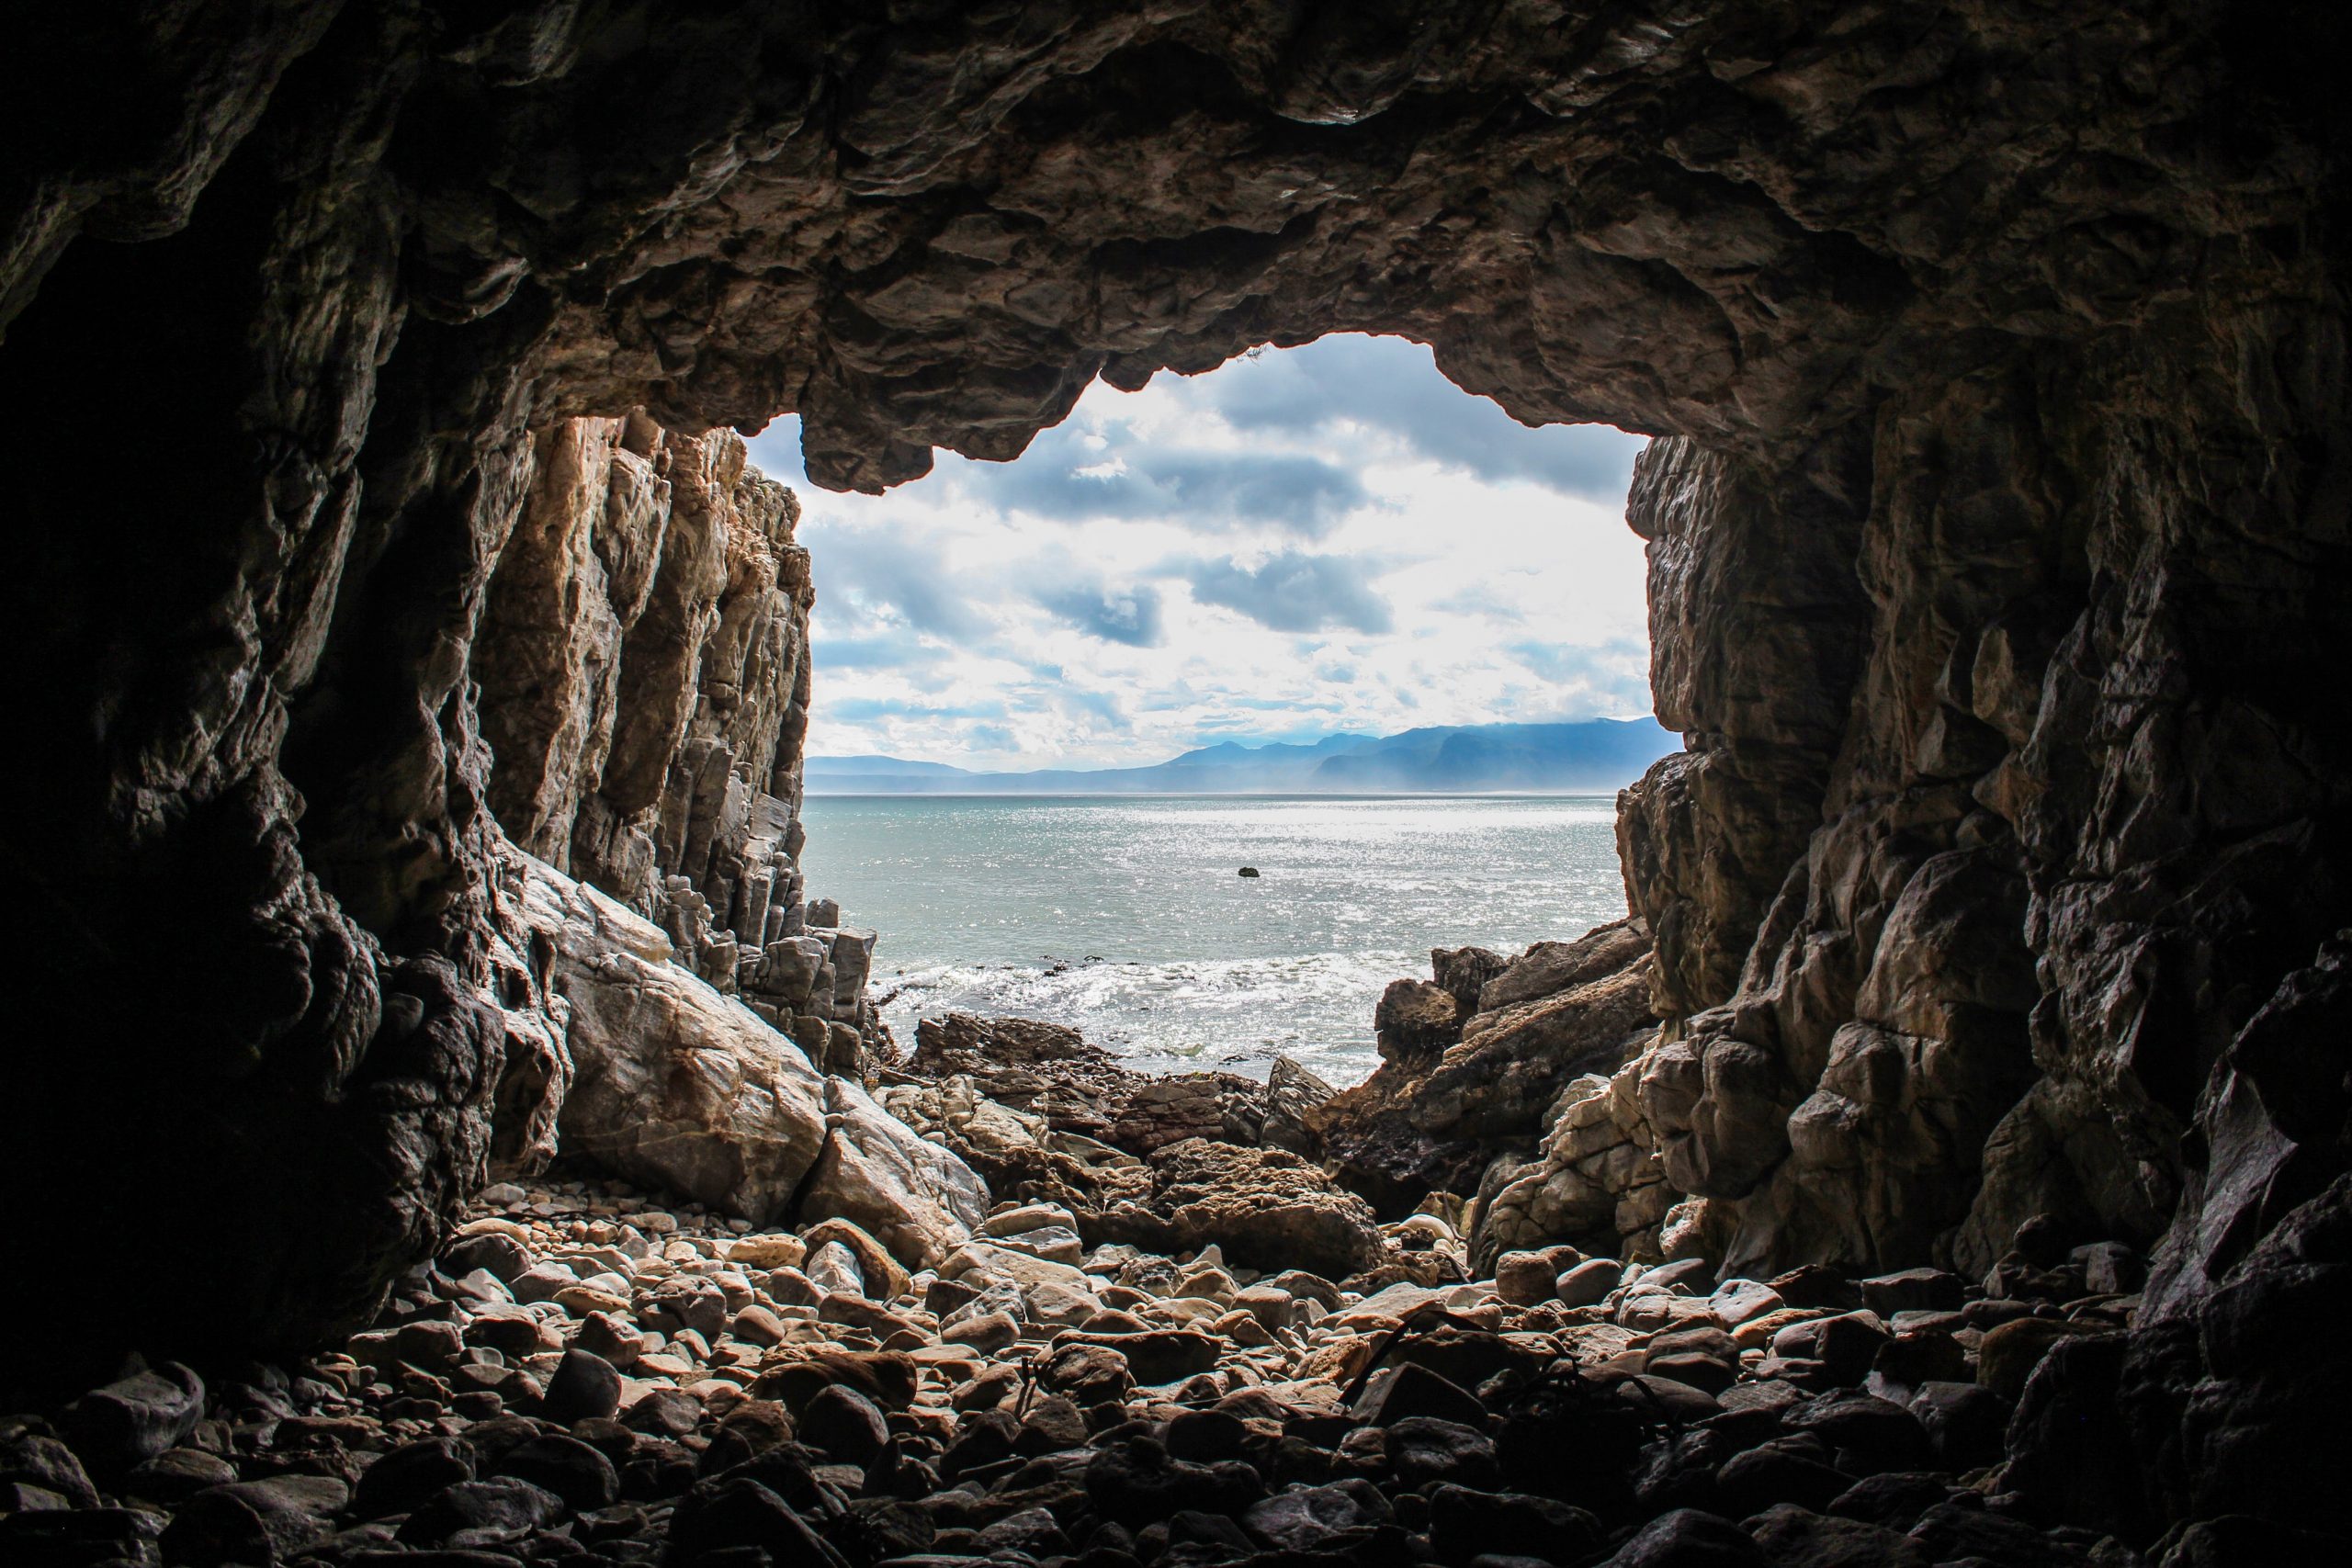 Photographie de l'ouverture d'une grotte rocheuse. L'appareil photo pointe vers l'extérieur de la grotte, montrant un lac bleu chatoyant, des nuages gris et des montagnes au loin.